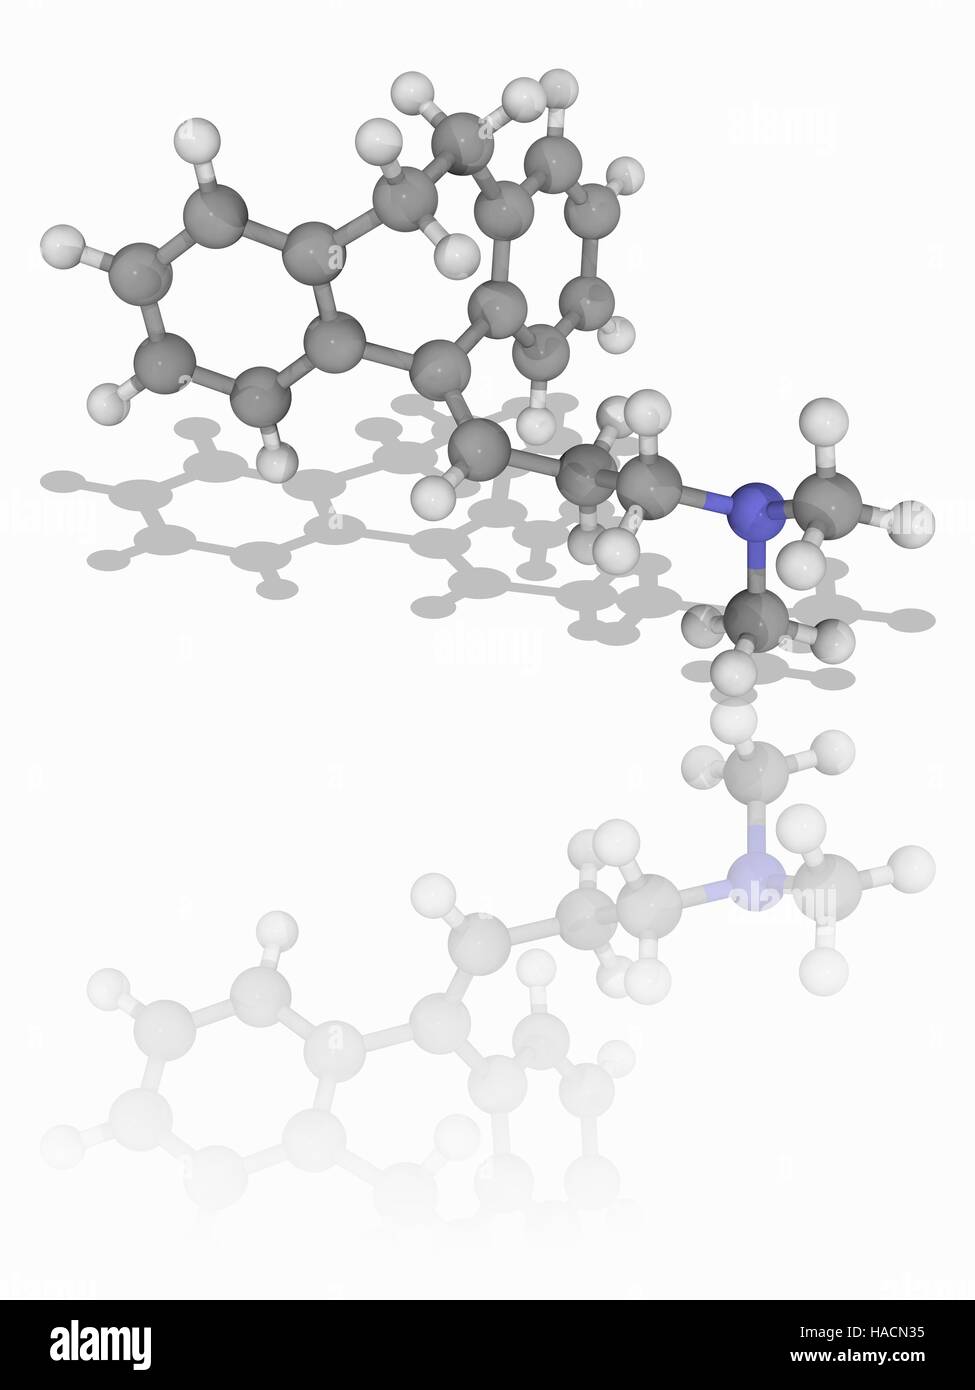 L'amitriptyline. Le modèle moléculaire de l'antidépresseur amitriptyline (C20.H23.N). Ce médicament est également utilisé pour traiter un large éventail de troubles de santé mentale. Les atomes sont représentés comme des sphères et sont codés par couleur : carbone (gris), l'hydrogène (blanc) et de l'azote (bleu). L'illustration. Banque D'Images